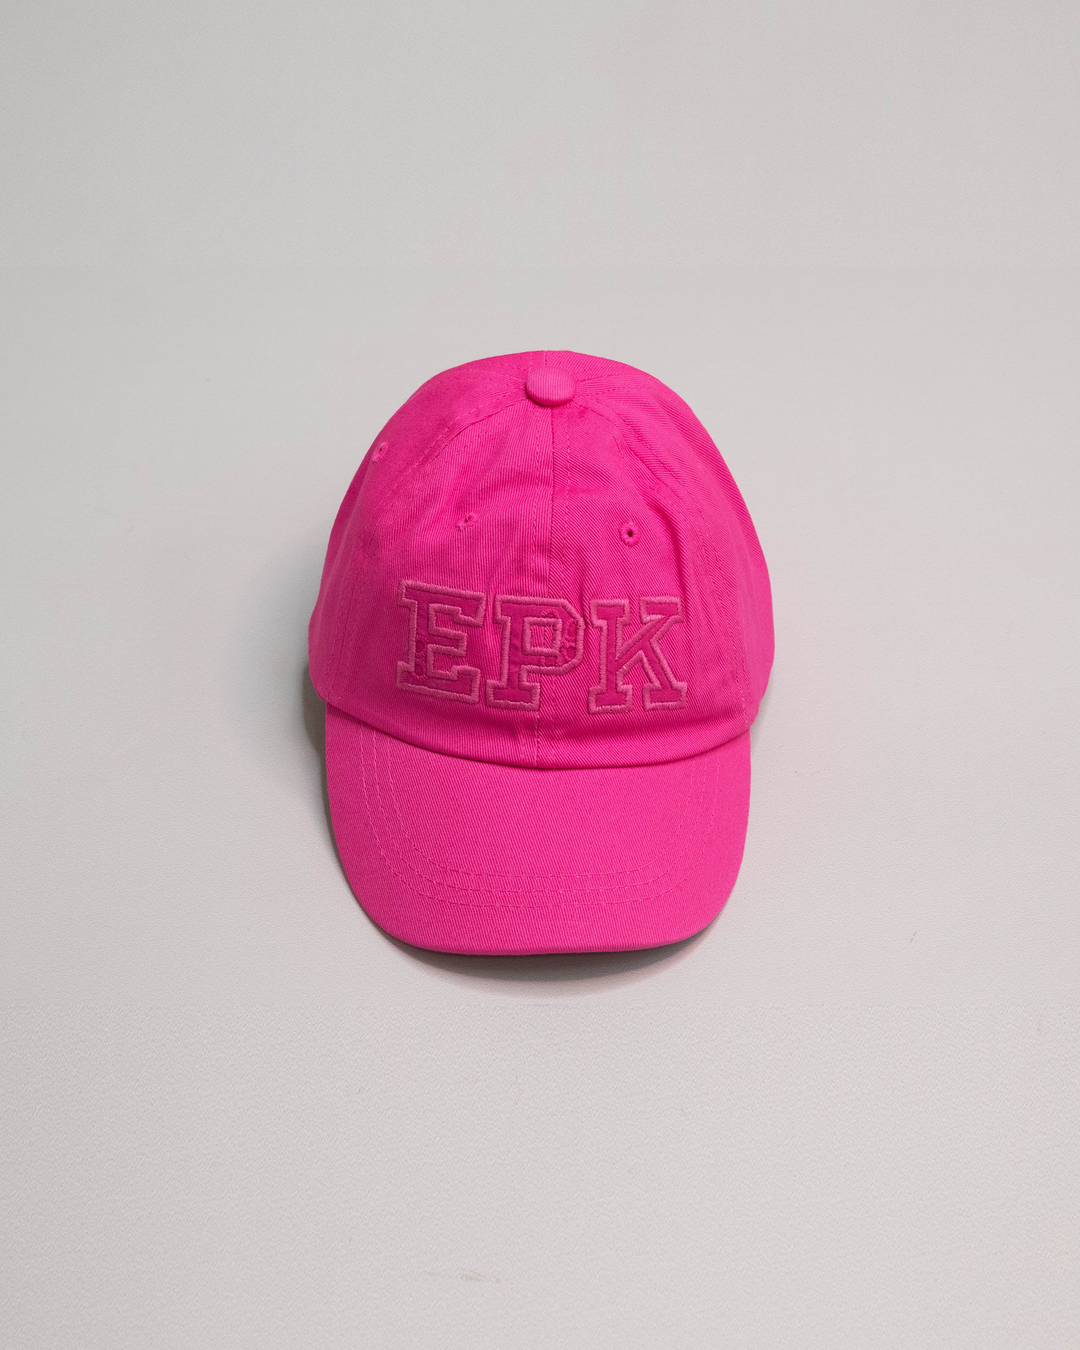 Gorra fucsia con logo EPK